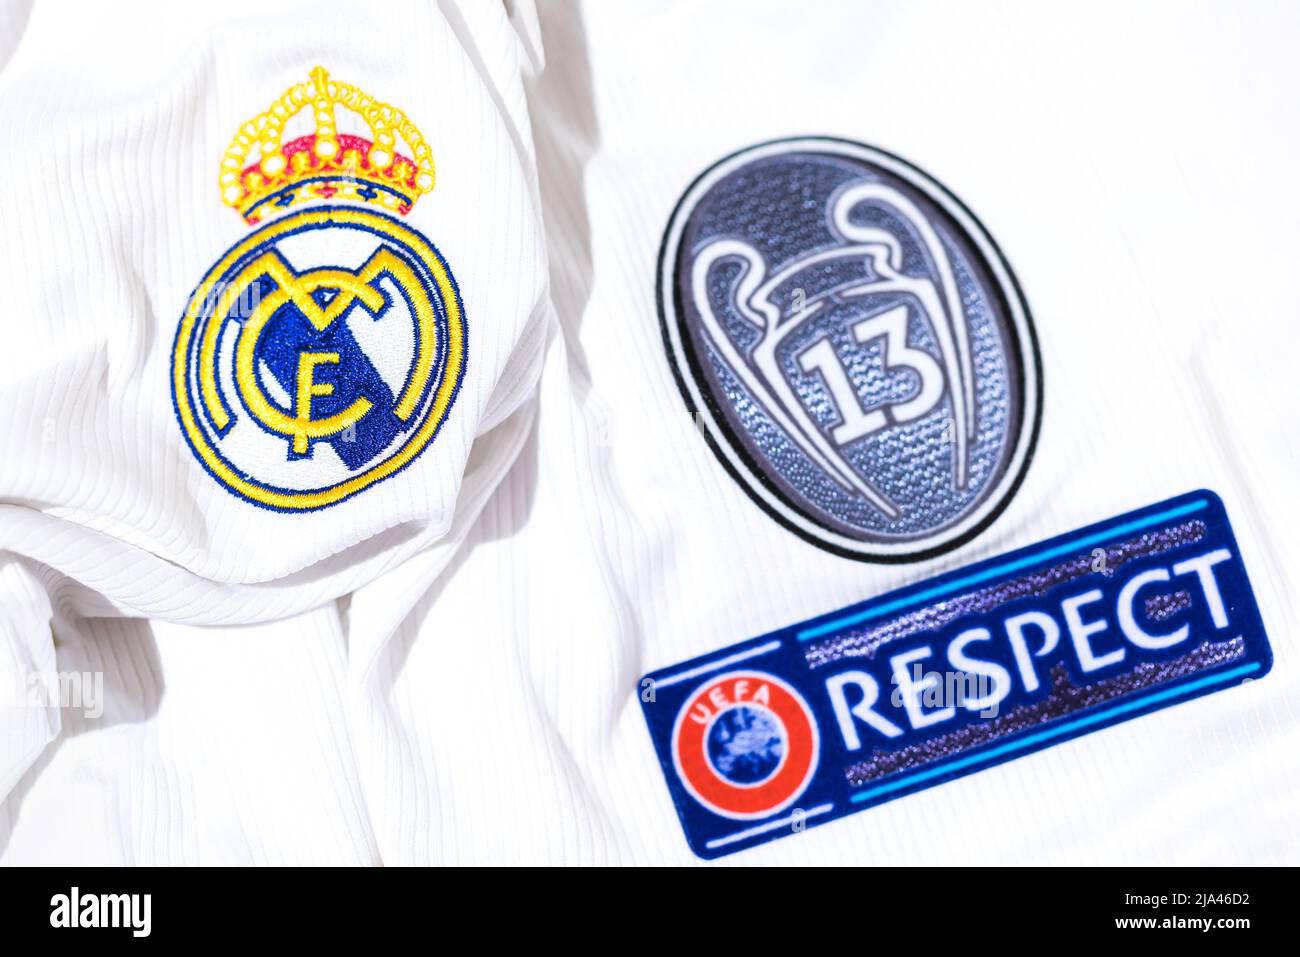 Bouclier sur le maillot blanc du Real Madrid football Club, avec bouclier de 13 coupes européennes et le signe de respect de l'UEFA. Championnat de l'UEFA Banque D'Images